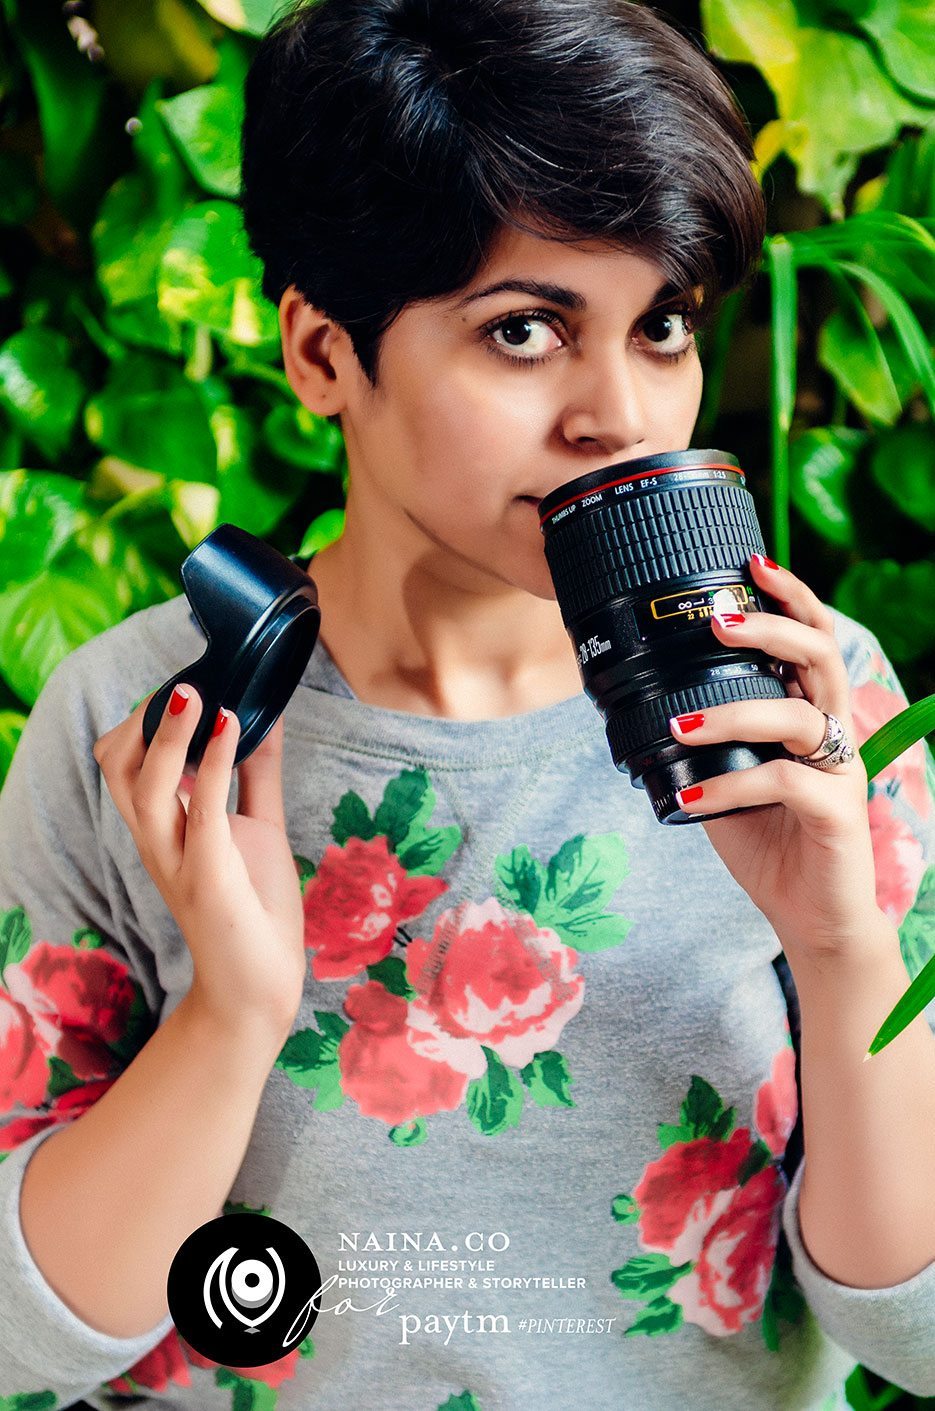 Naina.co-Raconteuse-Visuelle-Photographer-Storyteller-Luxury-Lifestyle-2014-NainaForPayTM-PayTM-Pinterest